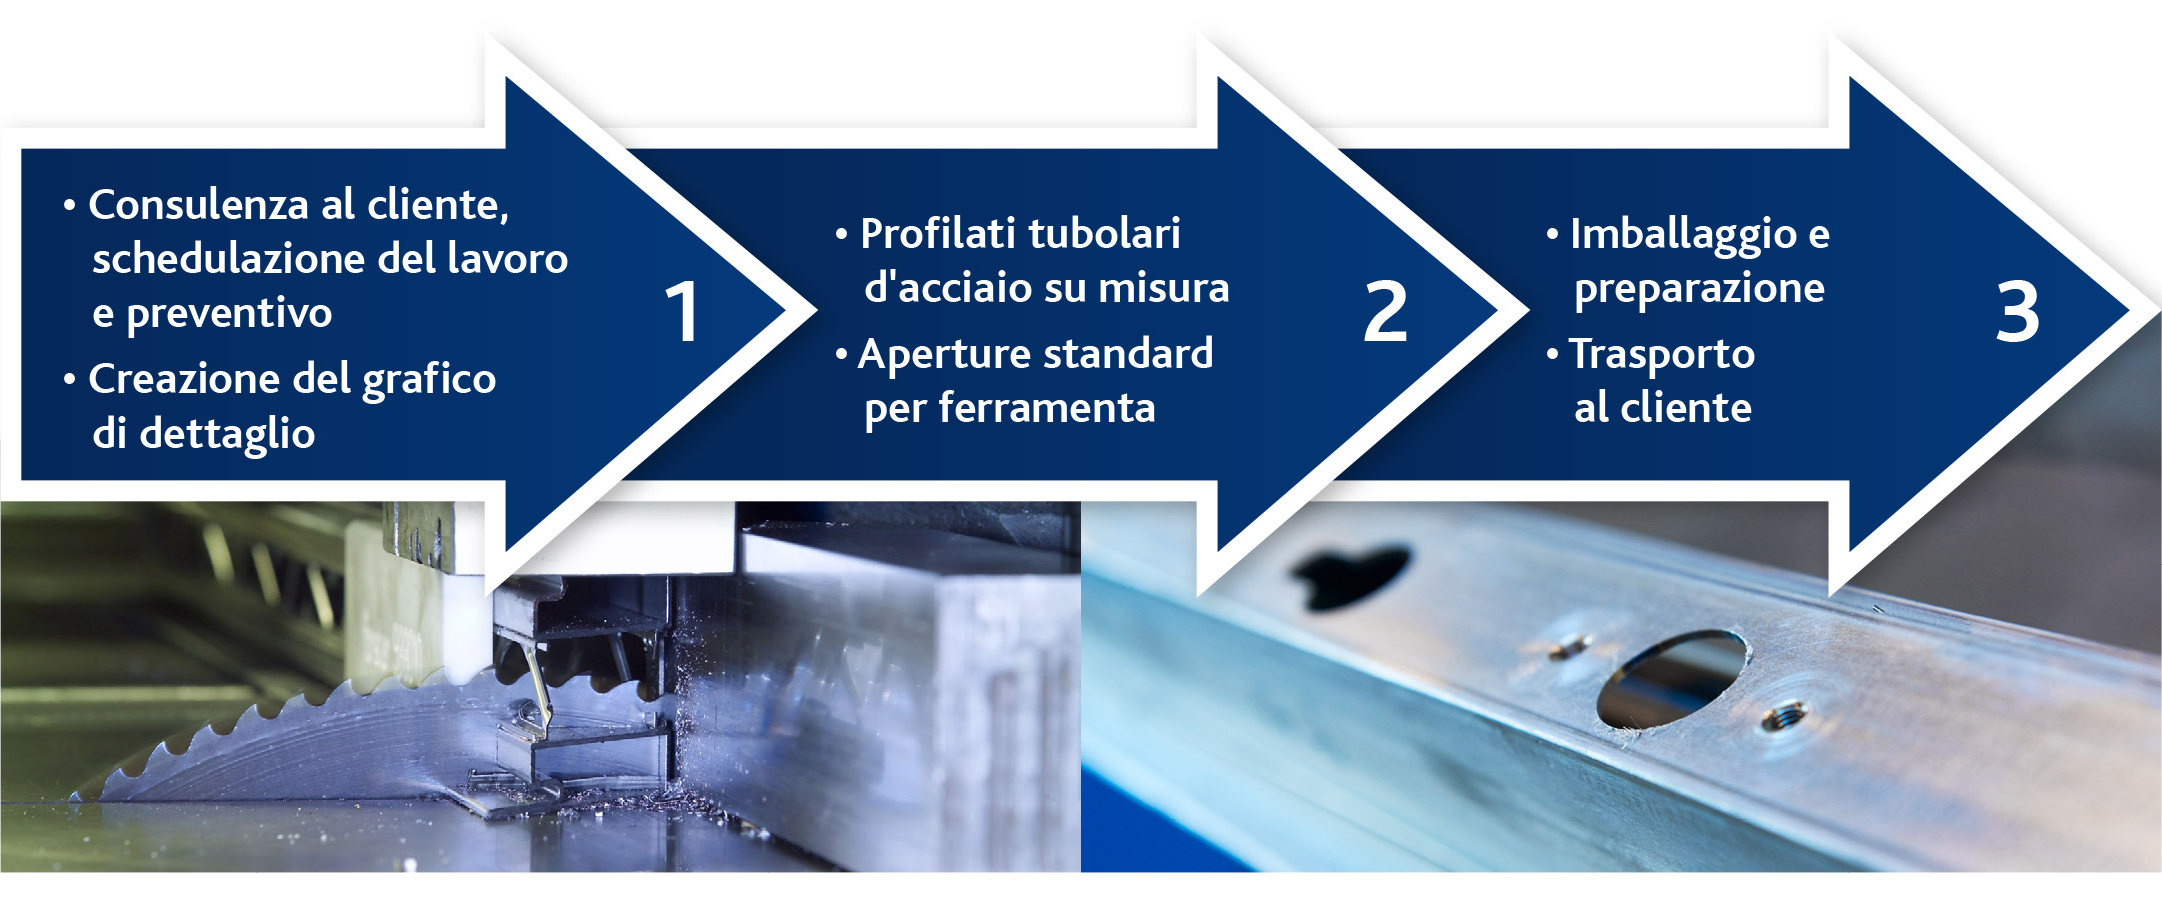 profilati-tubolari-in-acciaio-su-misura-processo.jpg